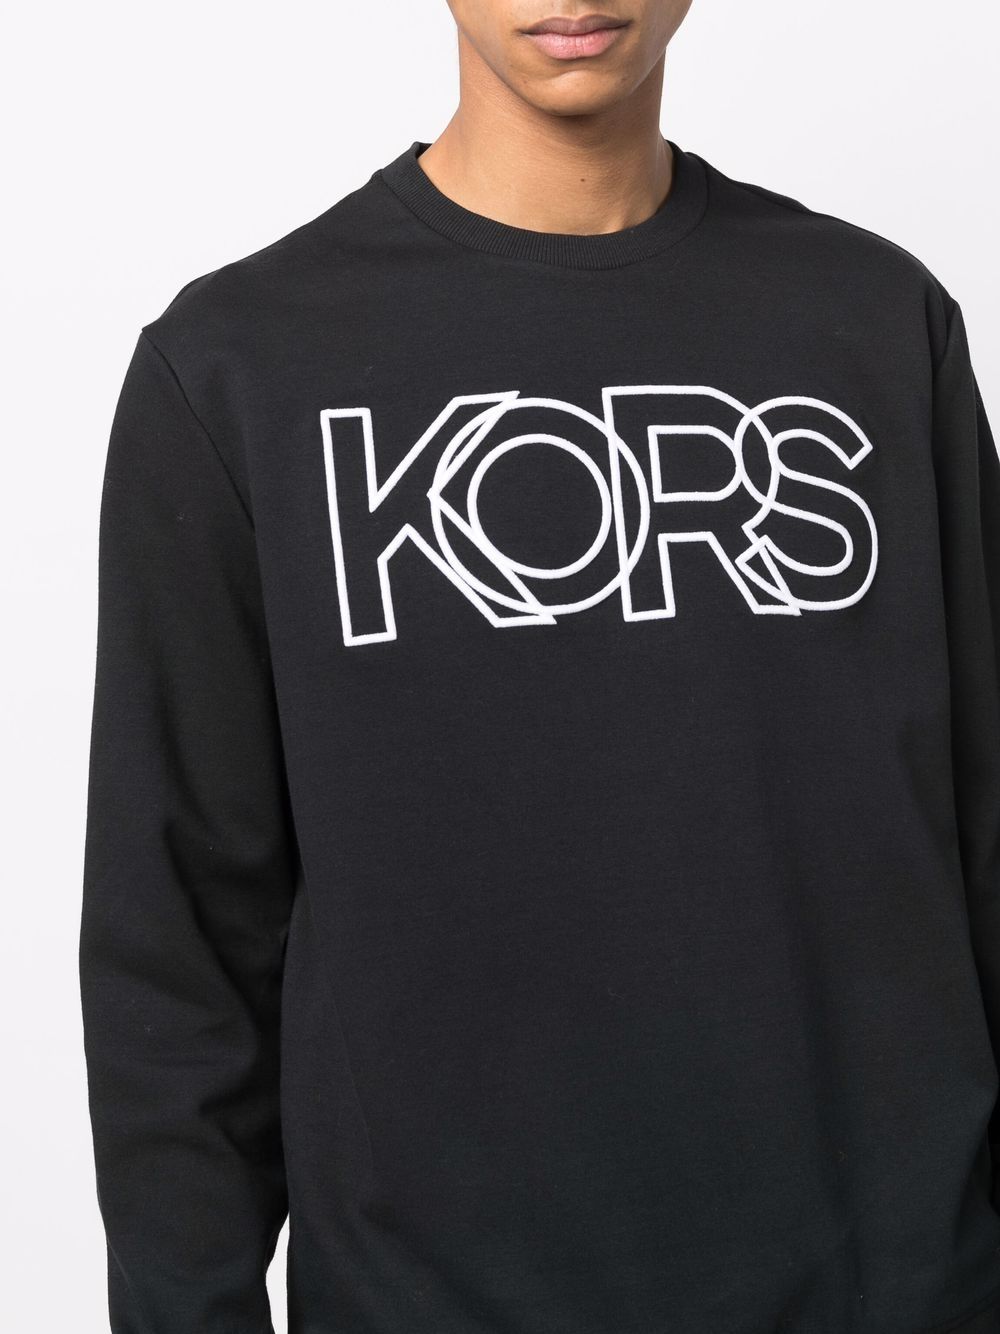 фото Michael kors logo-print sweatshirt